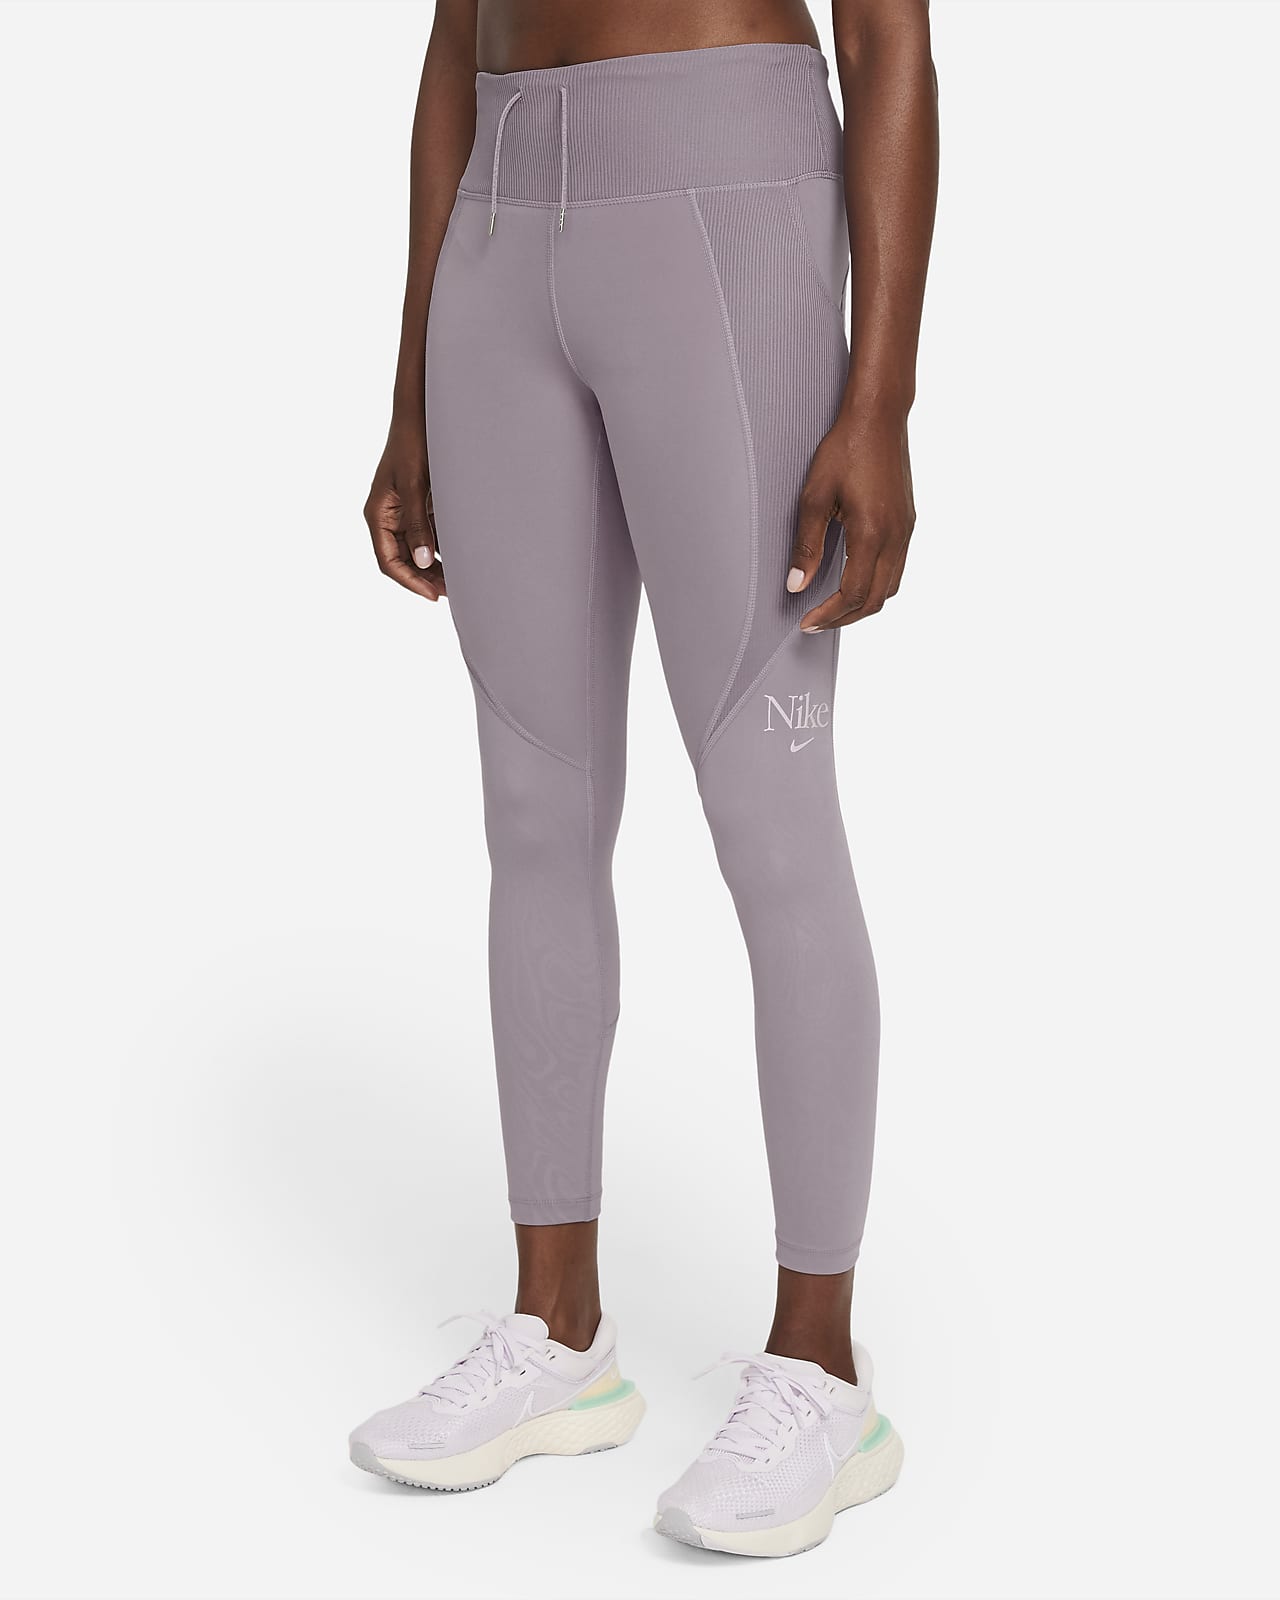 Nike Femme Fast Women's 7/8 Running Leggings